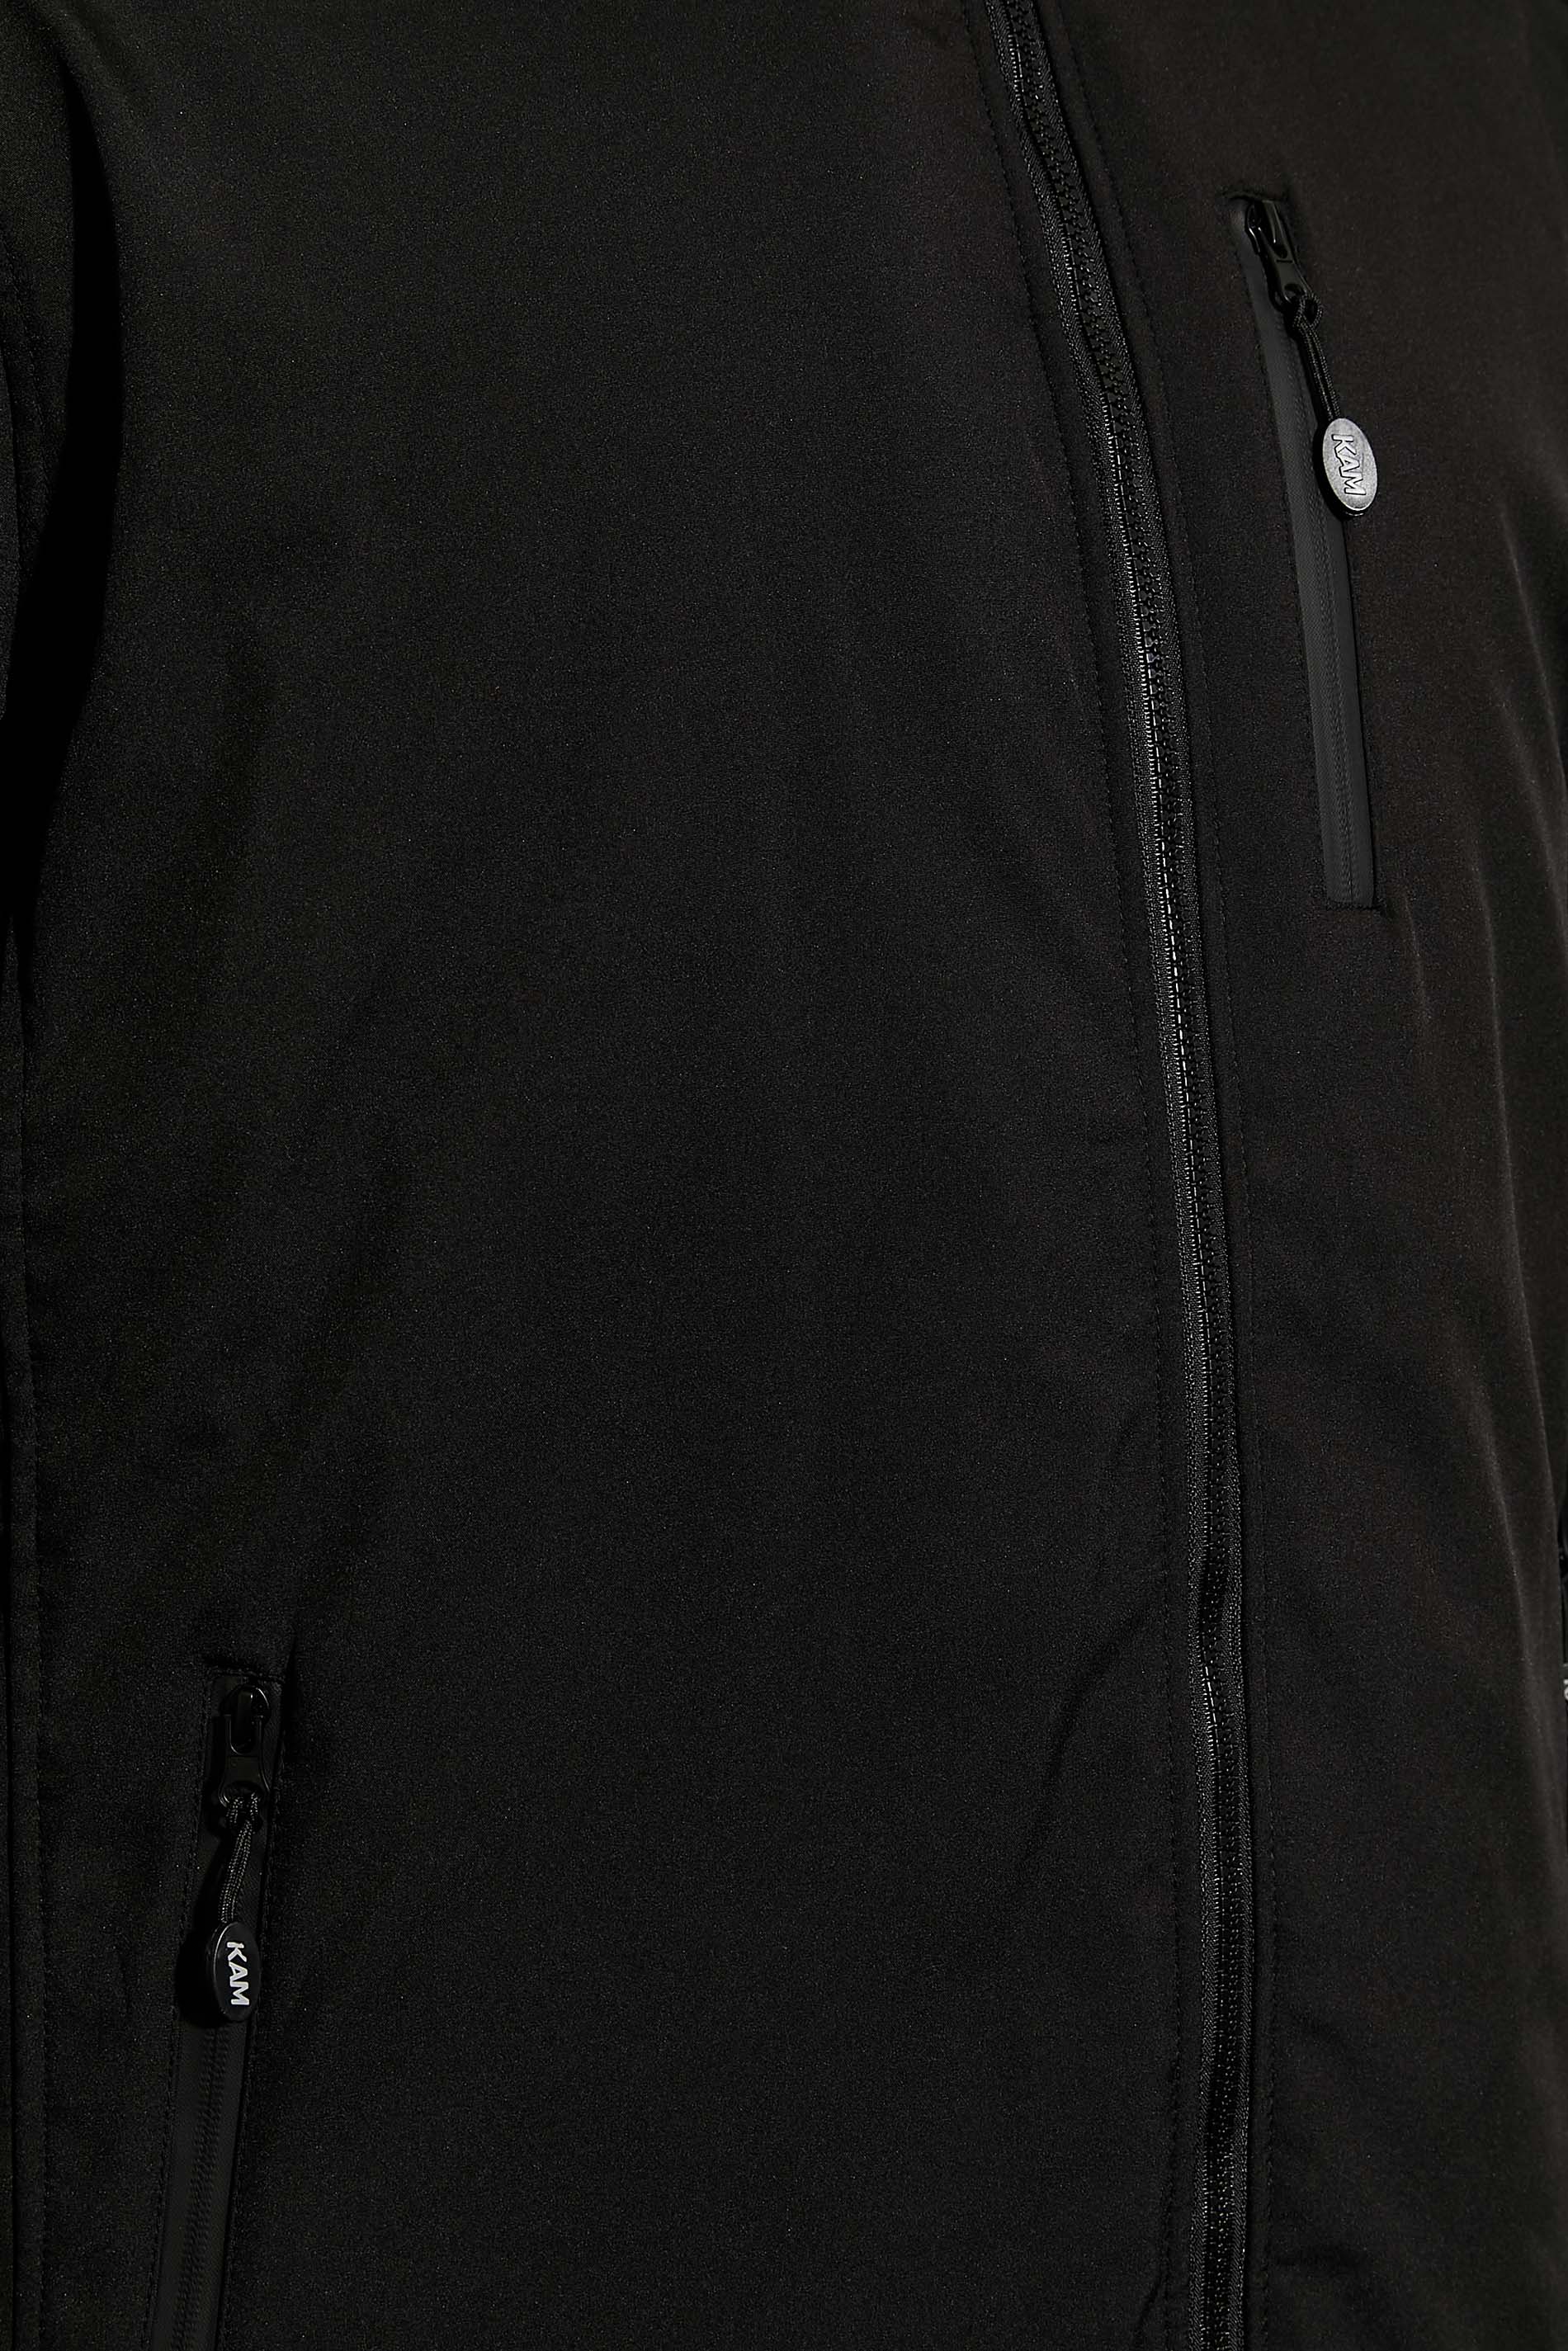 KAM Big & Tall Black Sherpa Lined Softshell Jacket | BadRhino